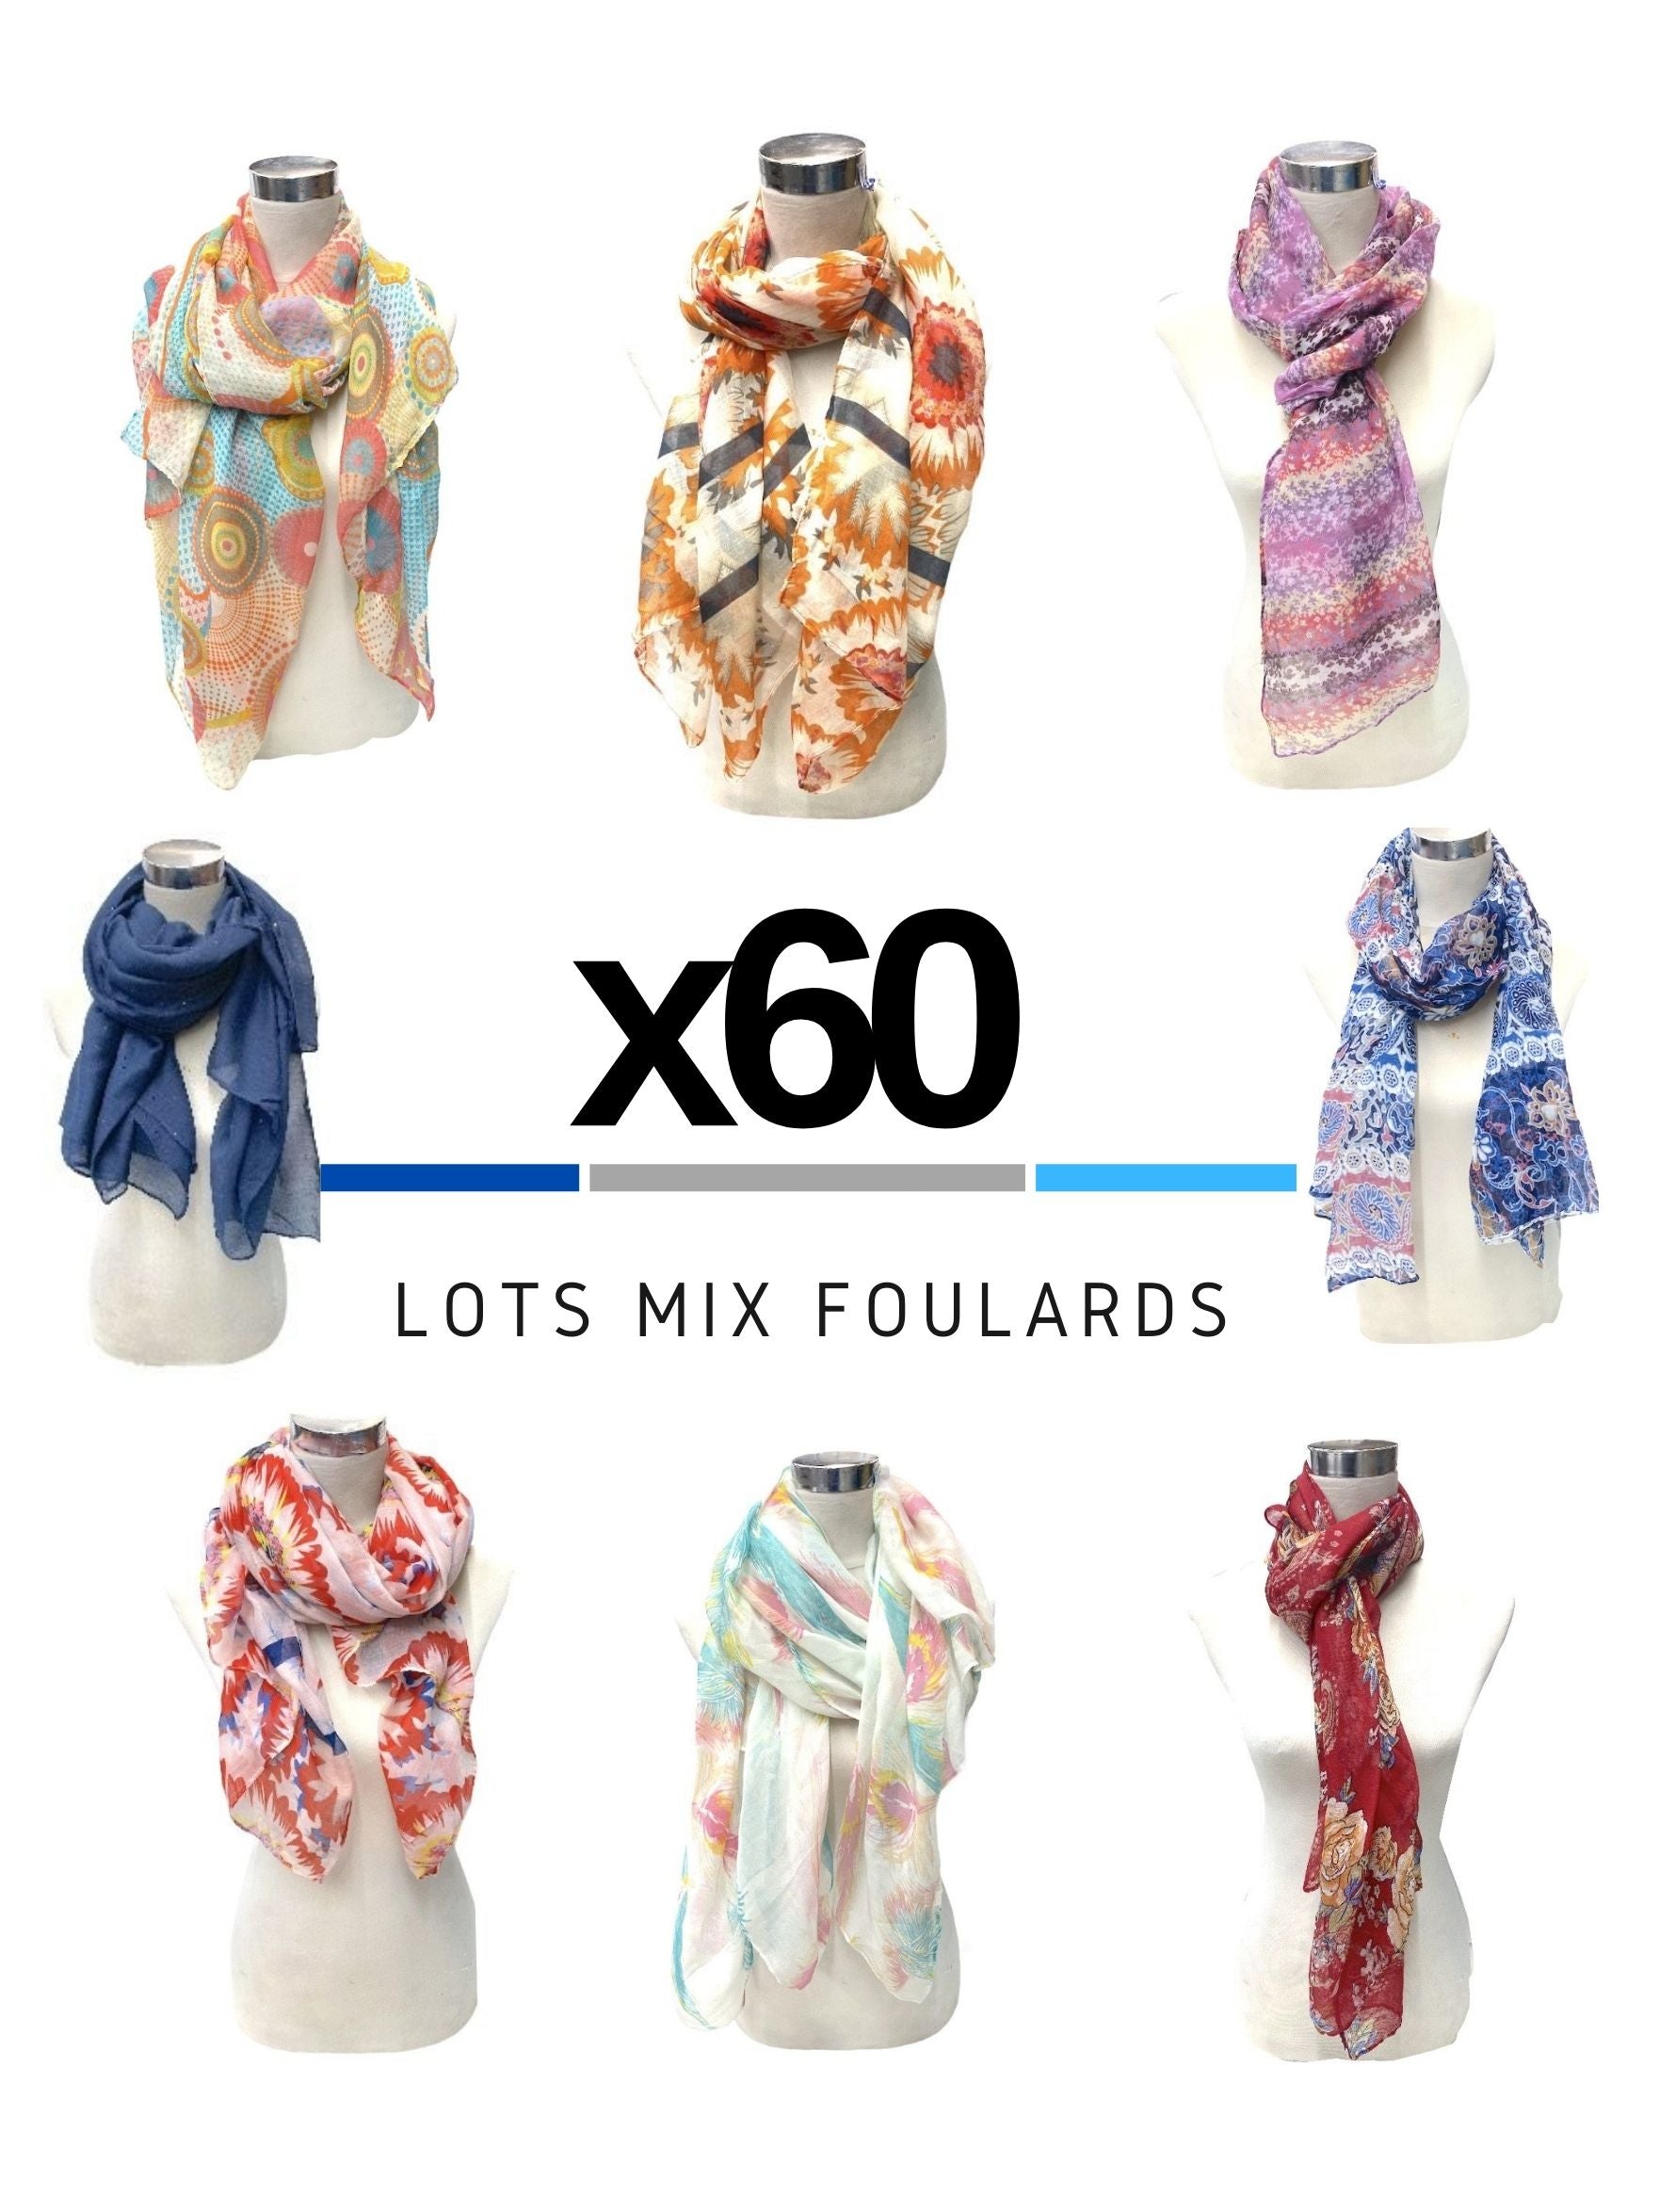 MAXI-LOT Mix foulards mélangés (x60)